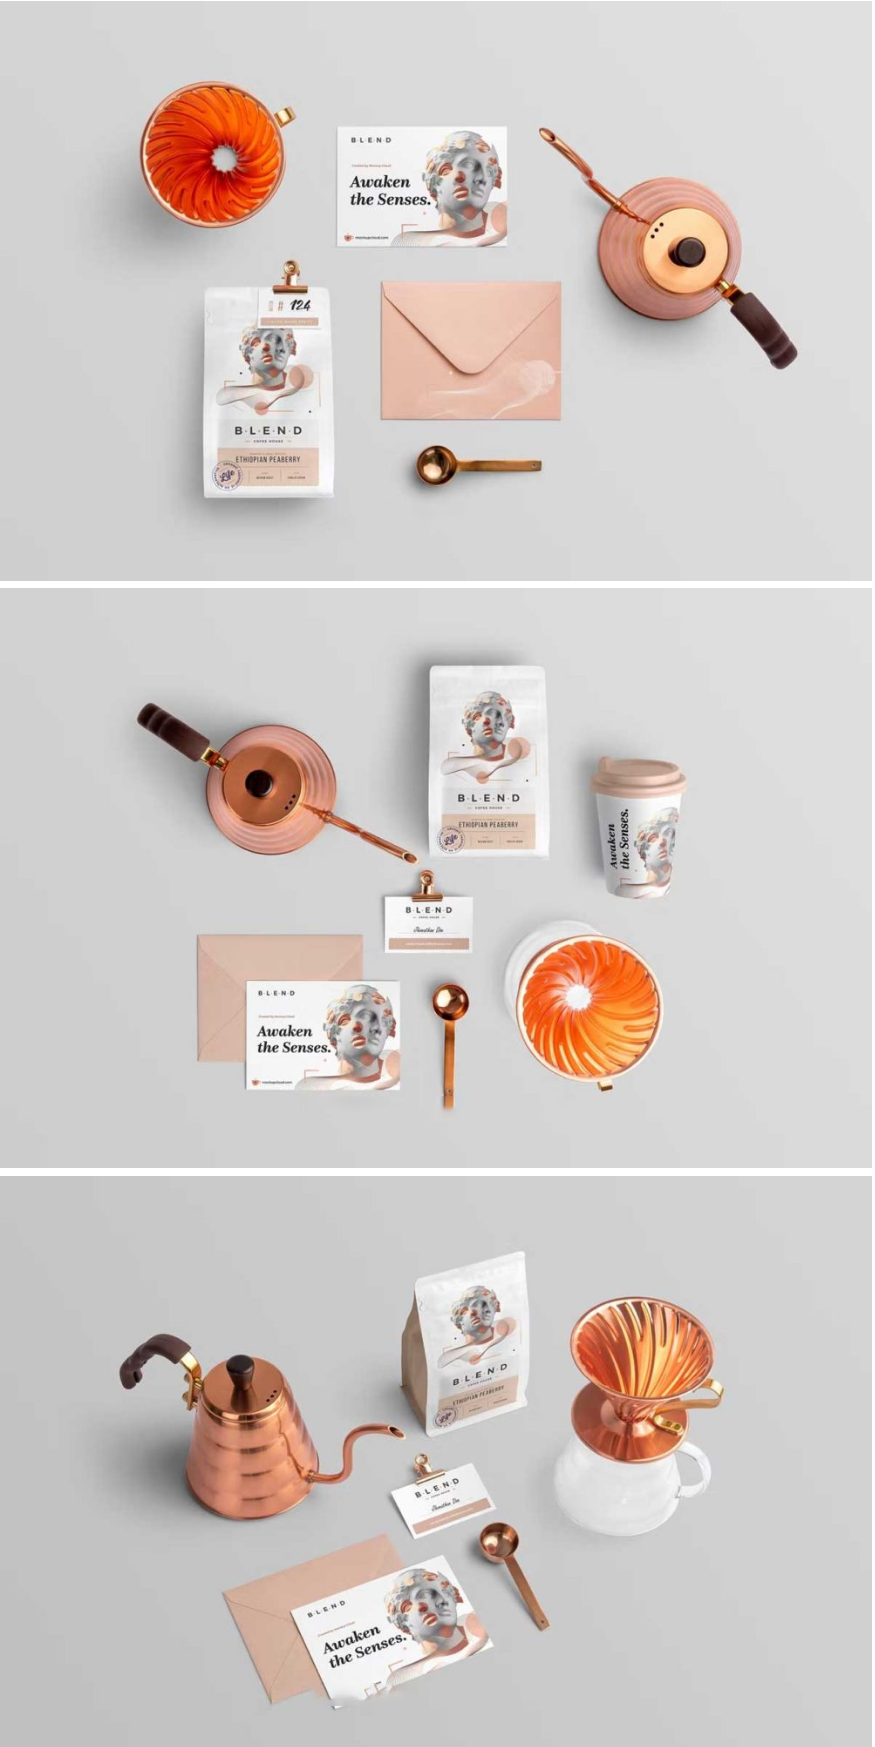 11款时尚咖啡品牌VI设计包装袋名片信封展示效果图PSD样机模板素材